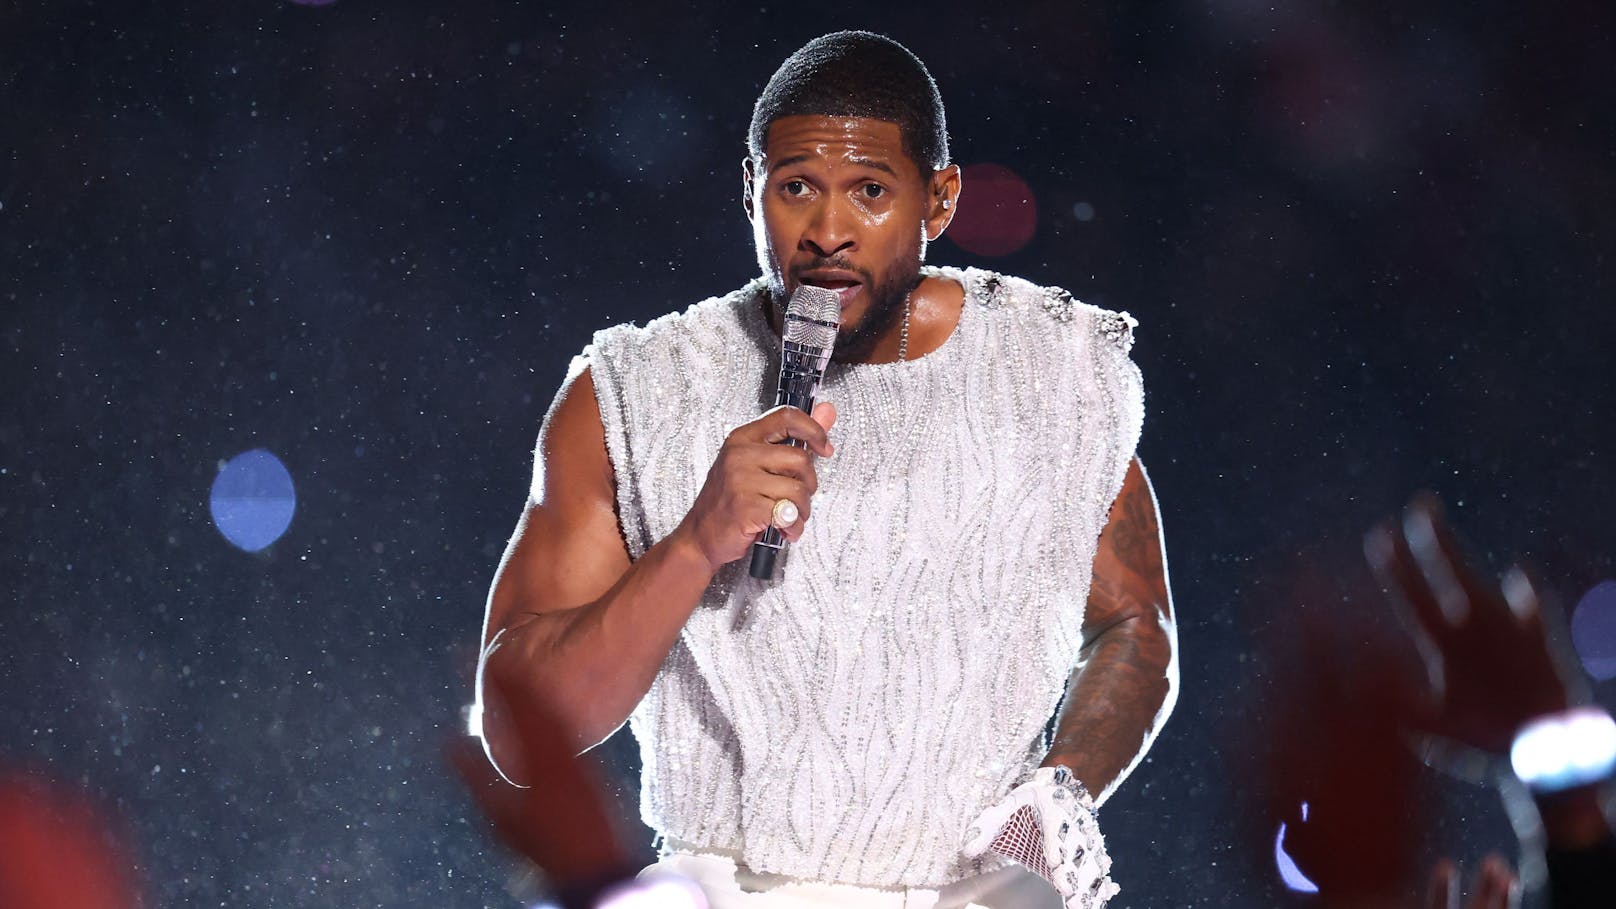 Vorwürfe gegen Usher! Reaktionen nach Superbowl-Show